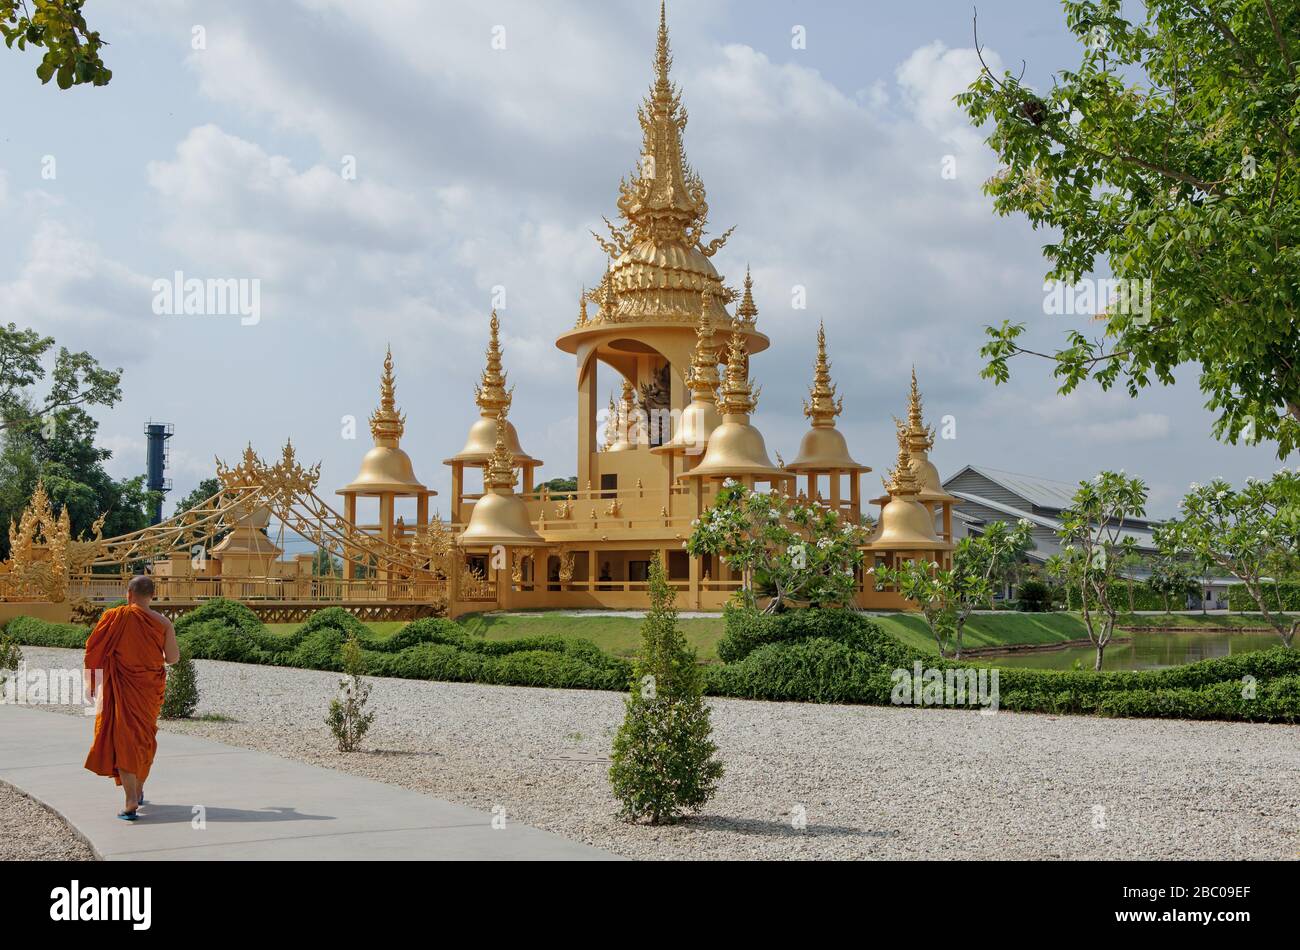 Le temple blanc ou Wat Rong Khun près de Chiang Rai est l'un des plus beaux temples de Thaïlande. Golden Building et pont dans la région du Temple Blanc. Banque D'Images